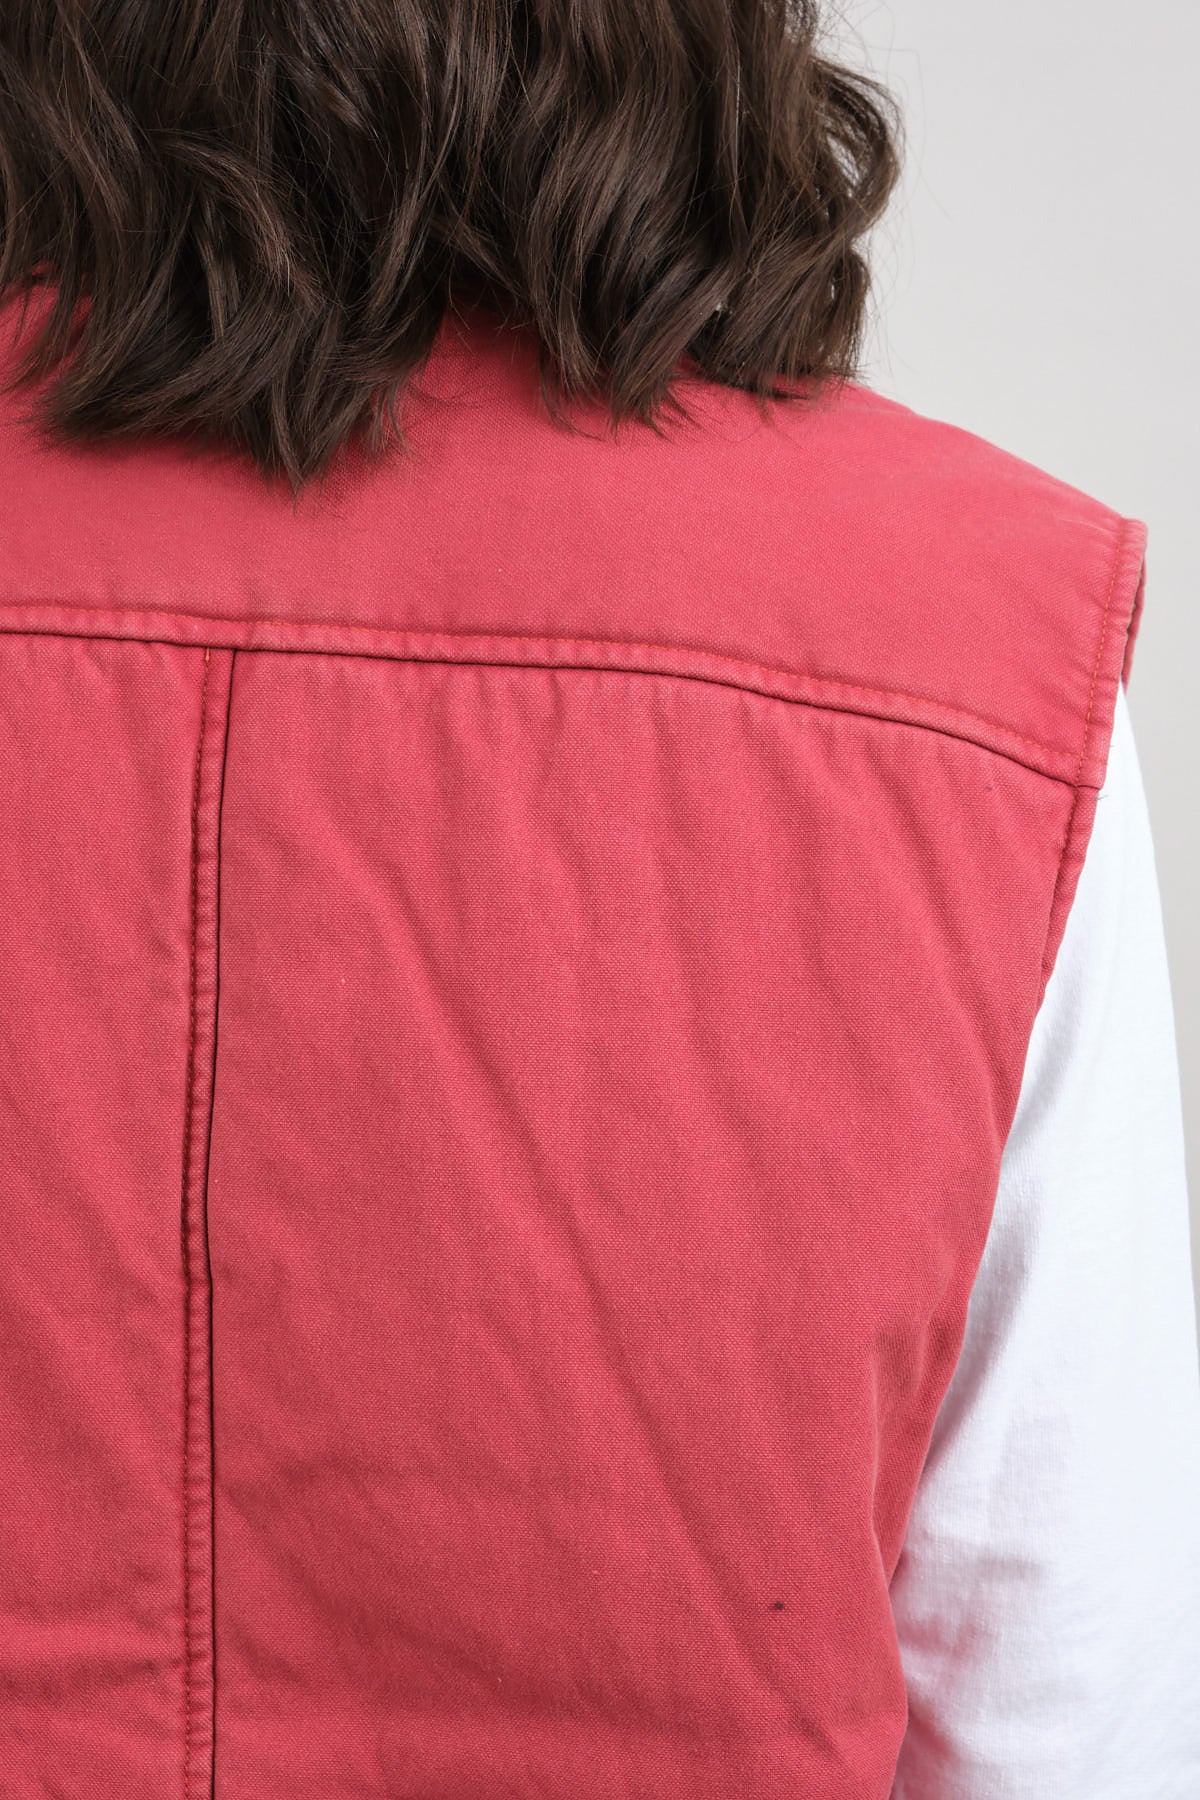 Monogrammed Pink Men's Bomber Jacket - Thotful Clothing®